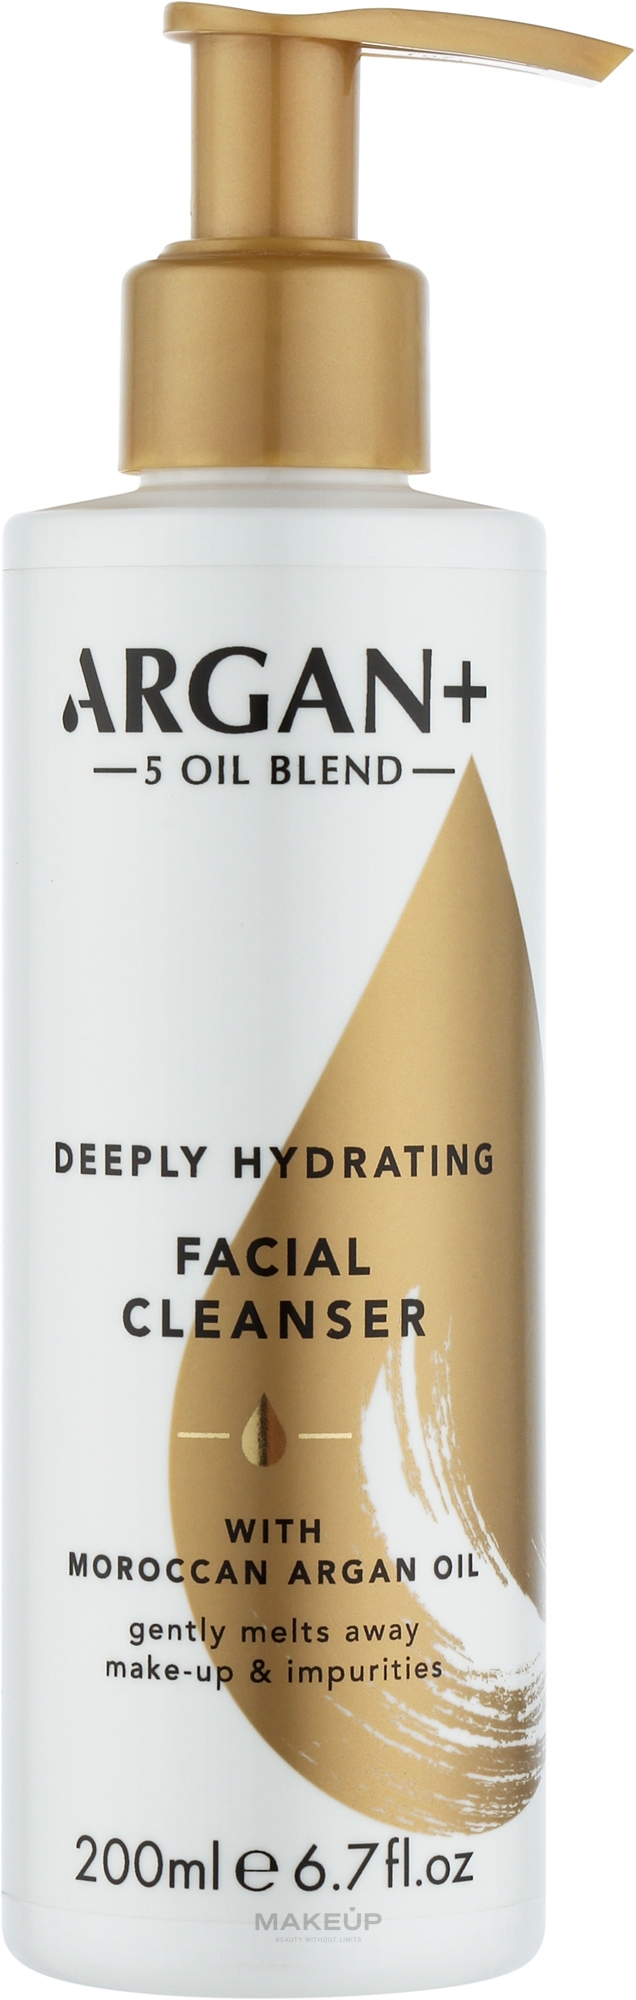 Гель зволожуючий для вмивання обличчя "Морокканська арганова олія" - Argan+ Moroccan Argan Oil Deeply Hydrating 5-Oil Cleanser — фото 200ml